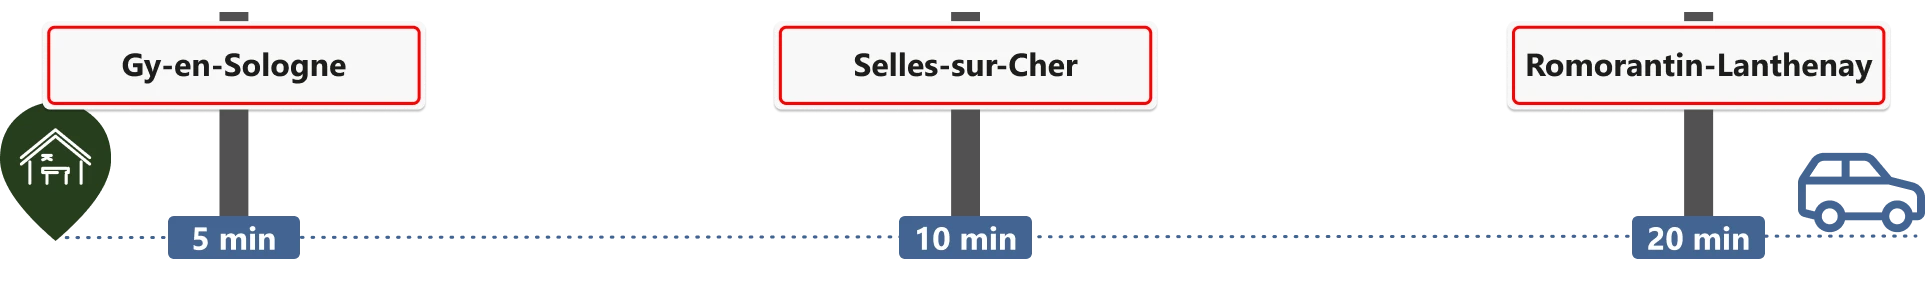 trajet à 5 min de Gy-en-Sologne 10 min de Selles-sur-Cher et 20 min de Romorantin